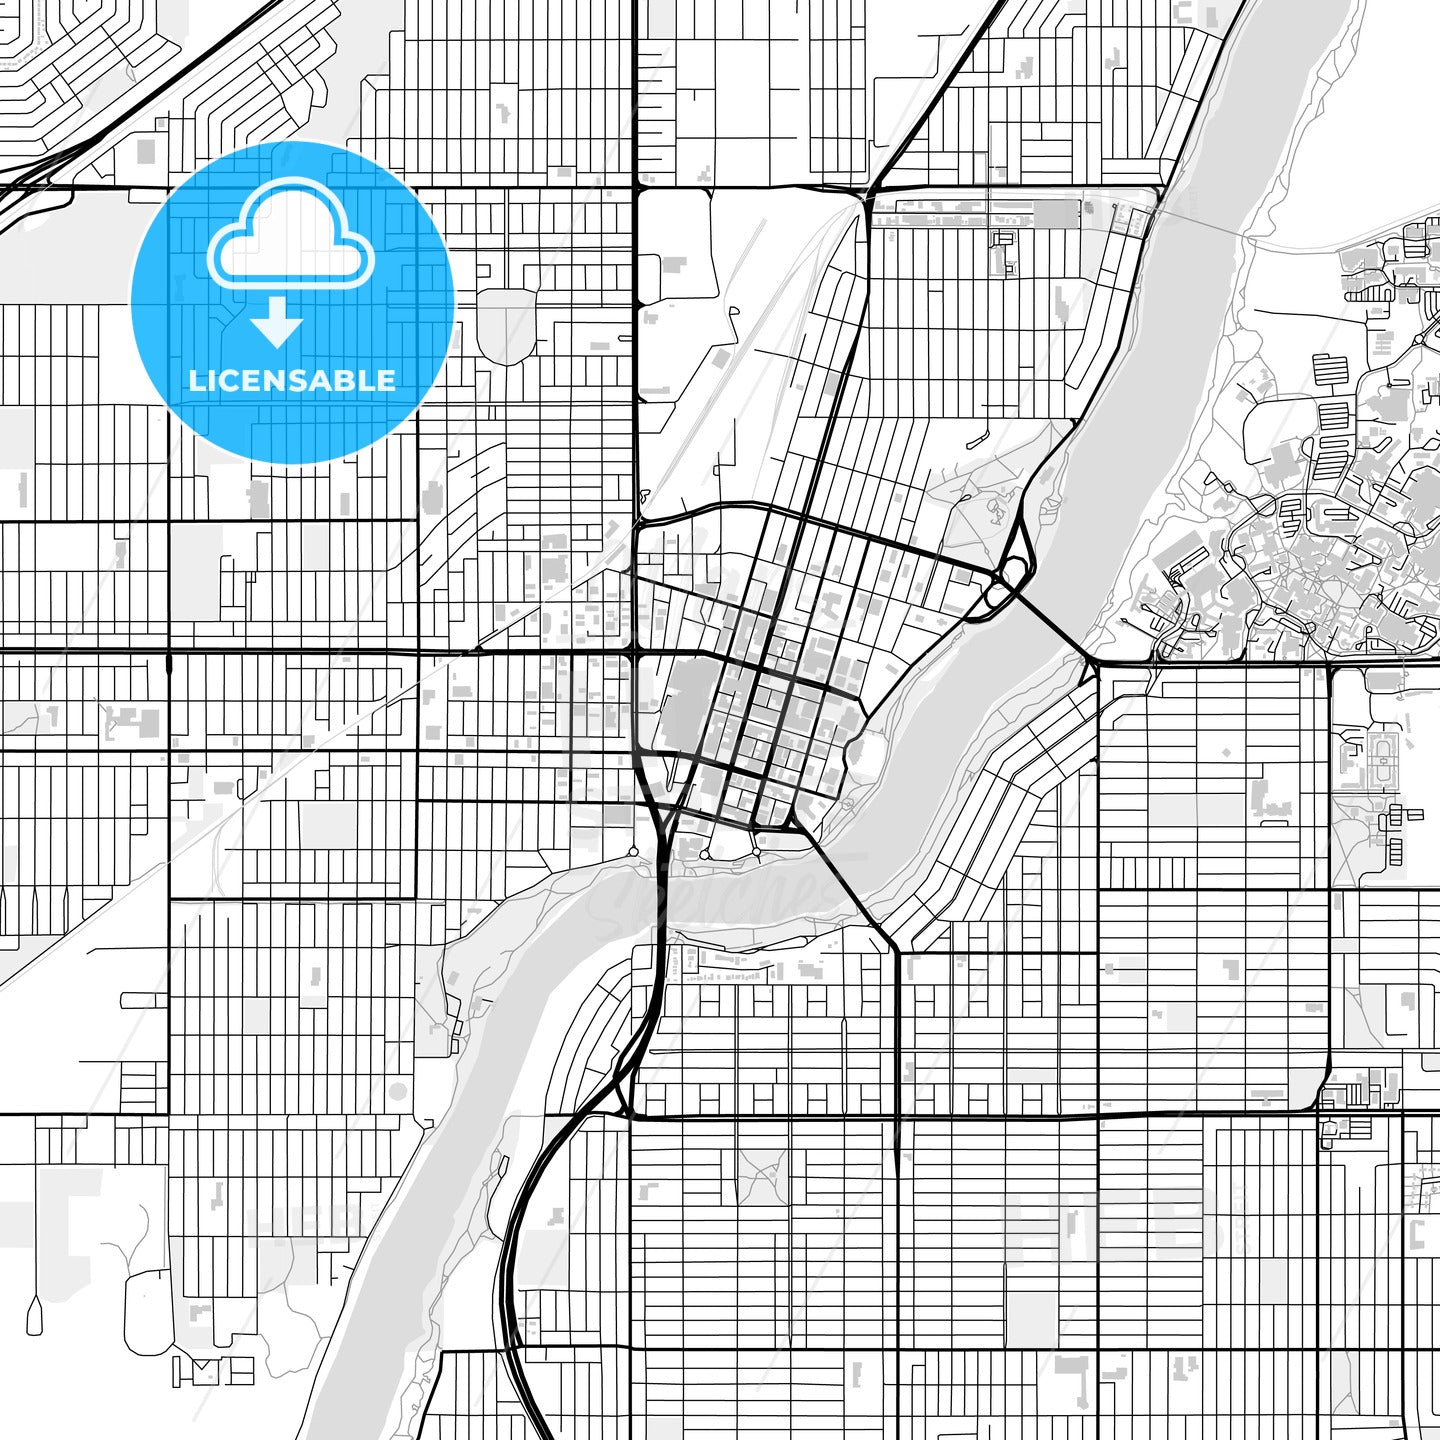 Downtown map of Saskatoon, Canada